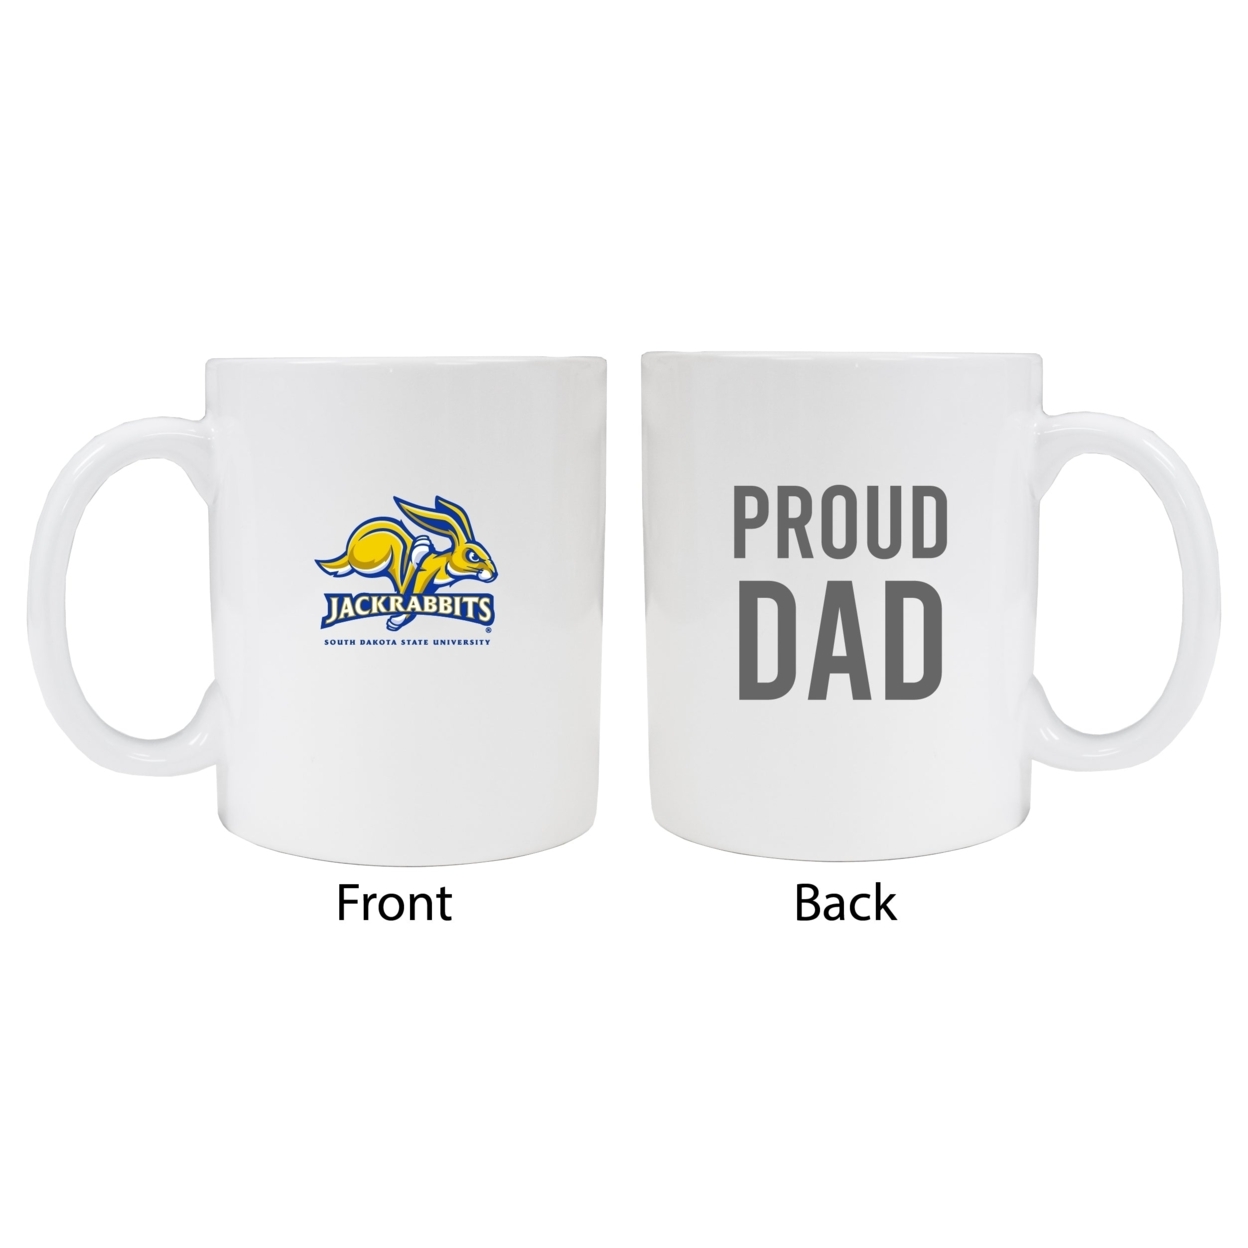 South Dakota State Jackrabbits Proud Dad Ceramic Coffee Mug - White